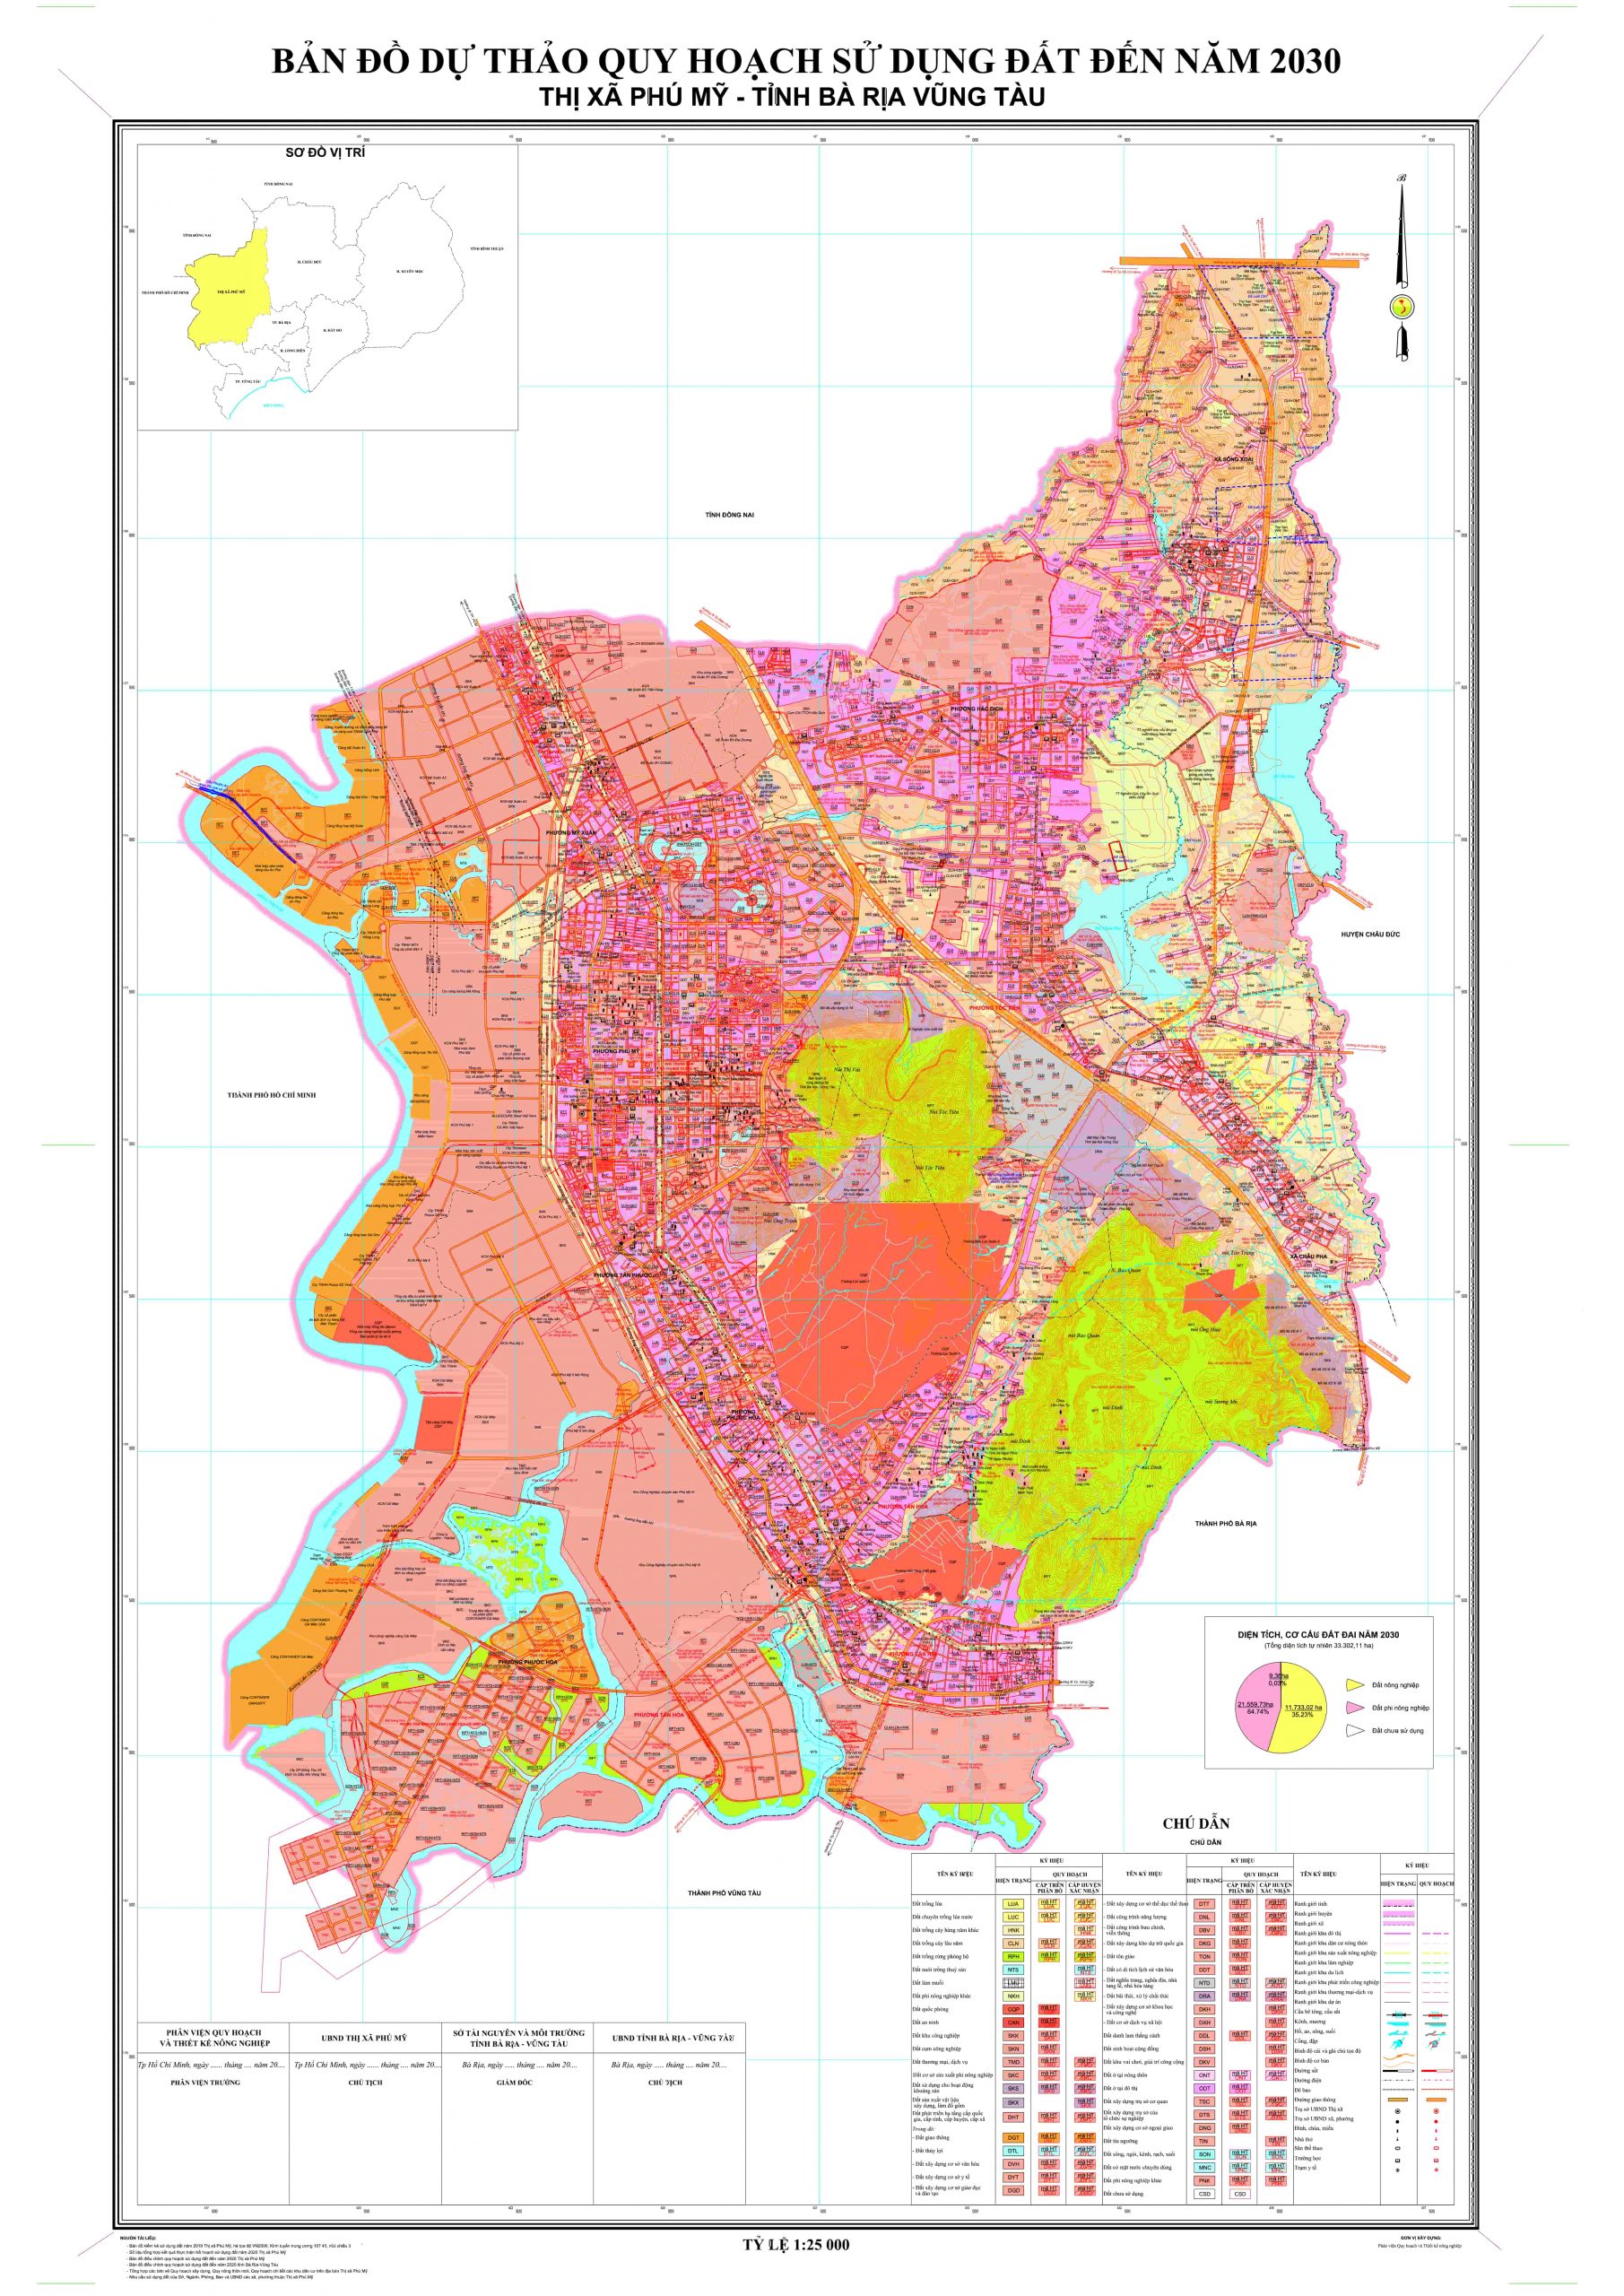 Bản đồ quy hoạch sử dụng đất thị xã Phú Mỹ tỉnh Bà Rịa - Vũng Tàu đến năm 2030, tầm nhìn 2050